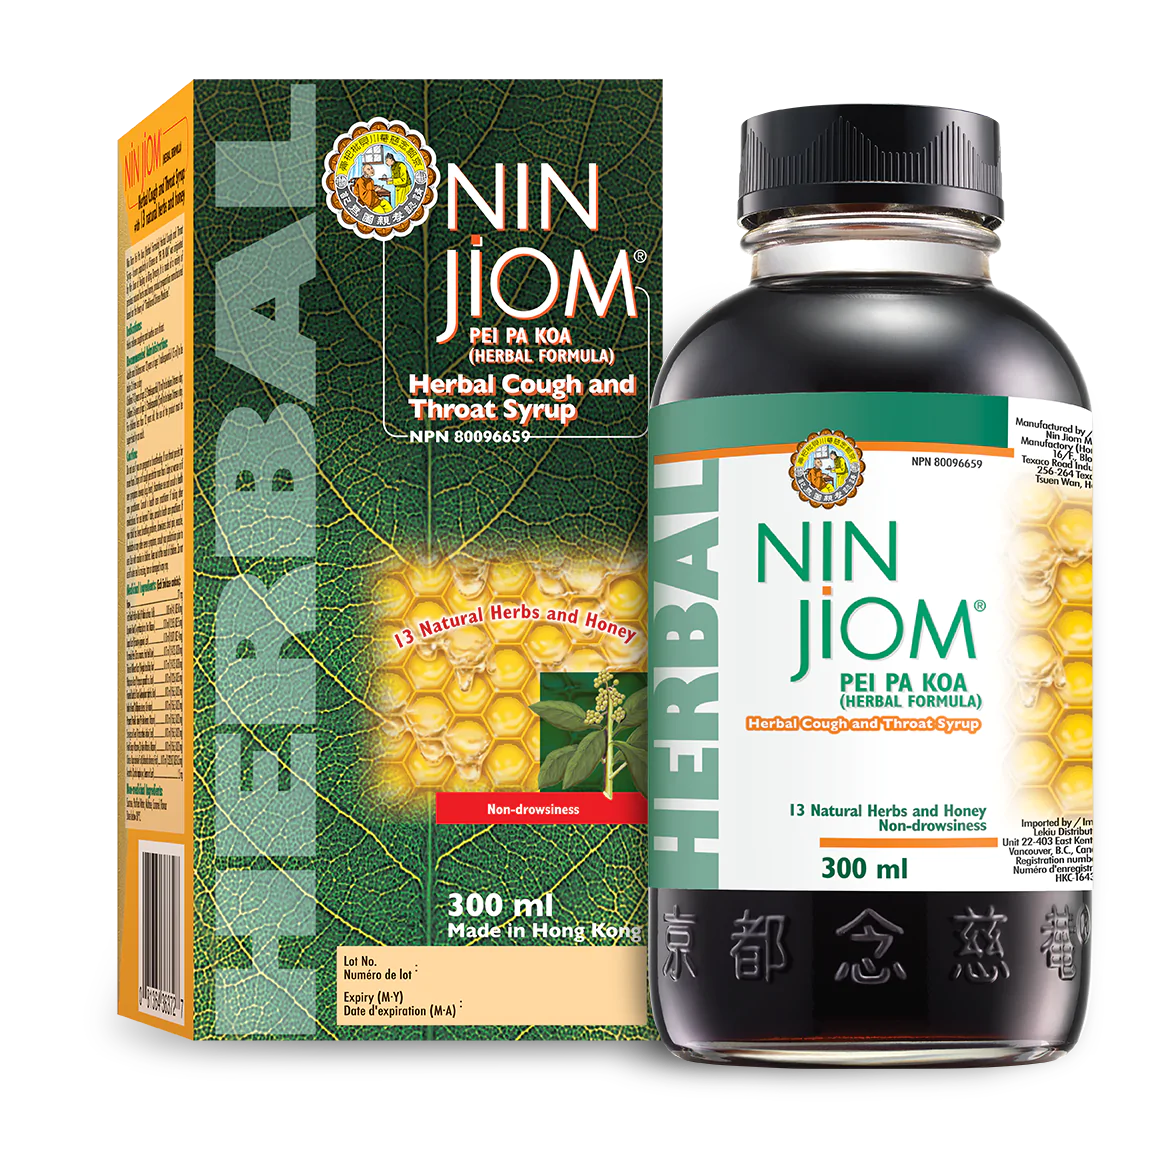 Nin Jiom Pei Pa Koa 300ml Cough Syrup (京都念慈庵蜜炼川贝枇杷膏) – Natural Focus Health